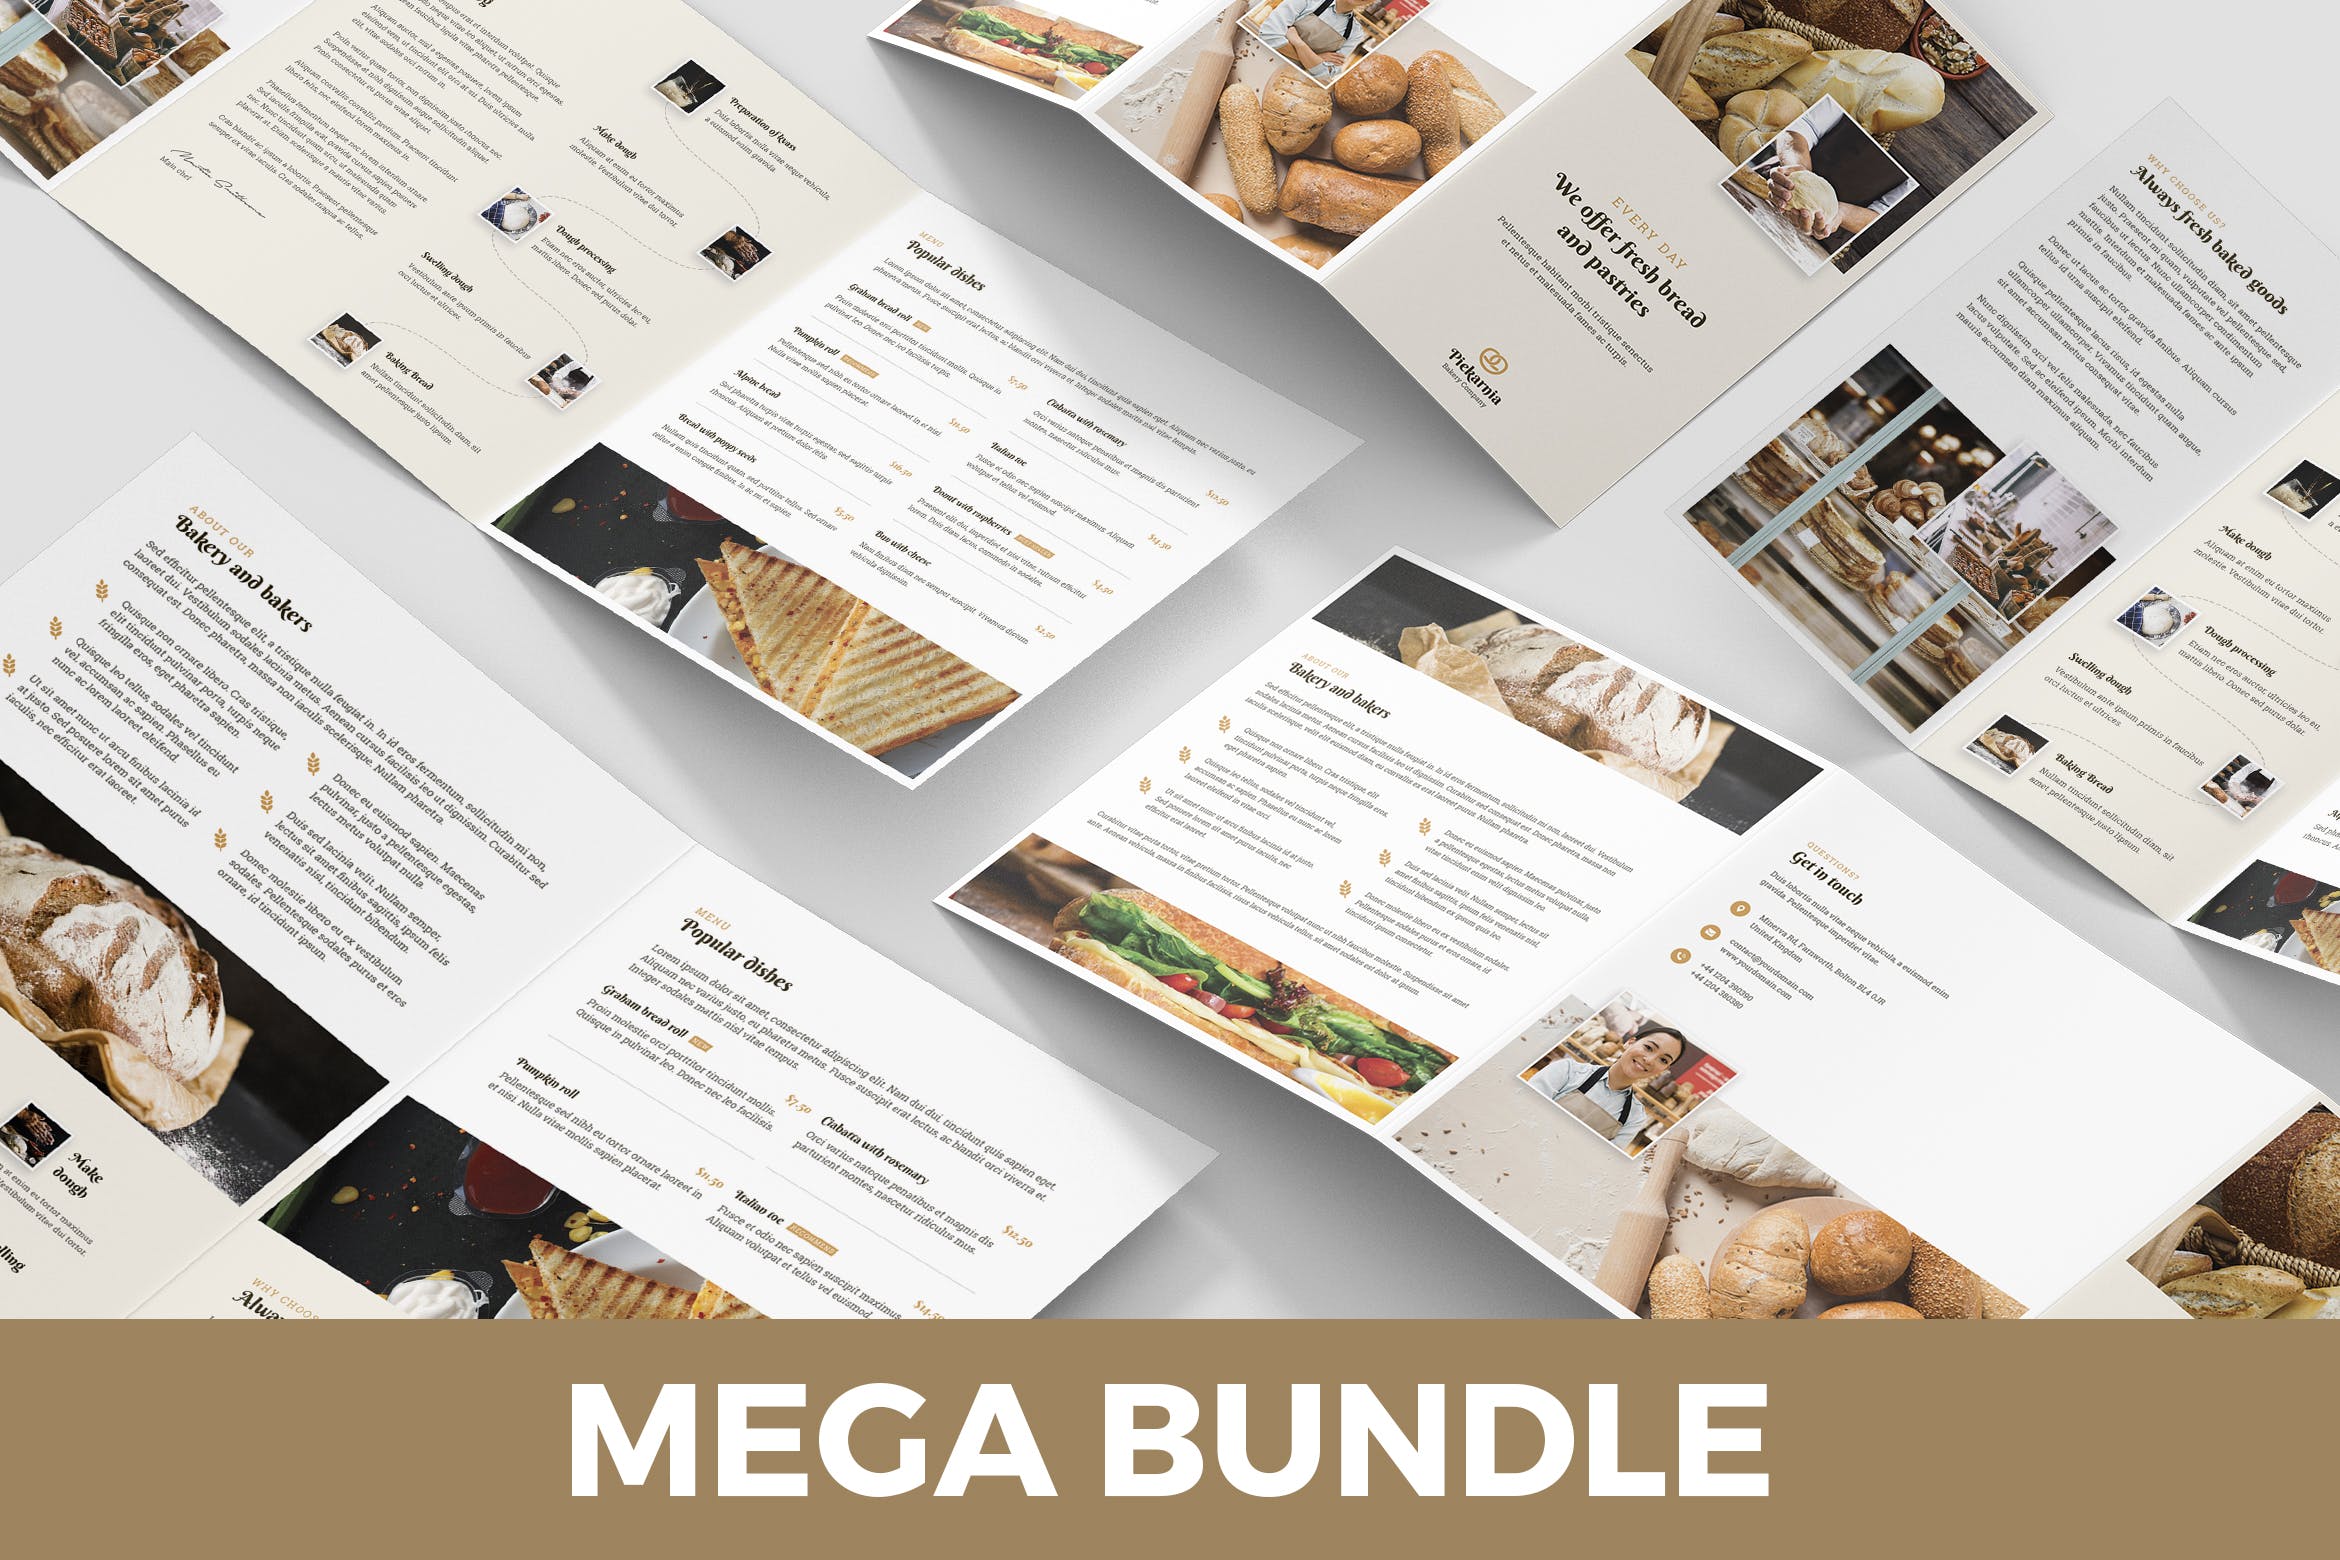 5合1面包店折页宣传单设计模板合集 Bakery – Brochures Bundle Print Templates 5 in 1插图